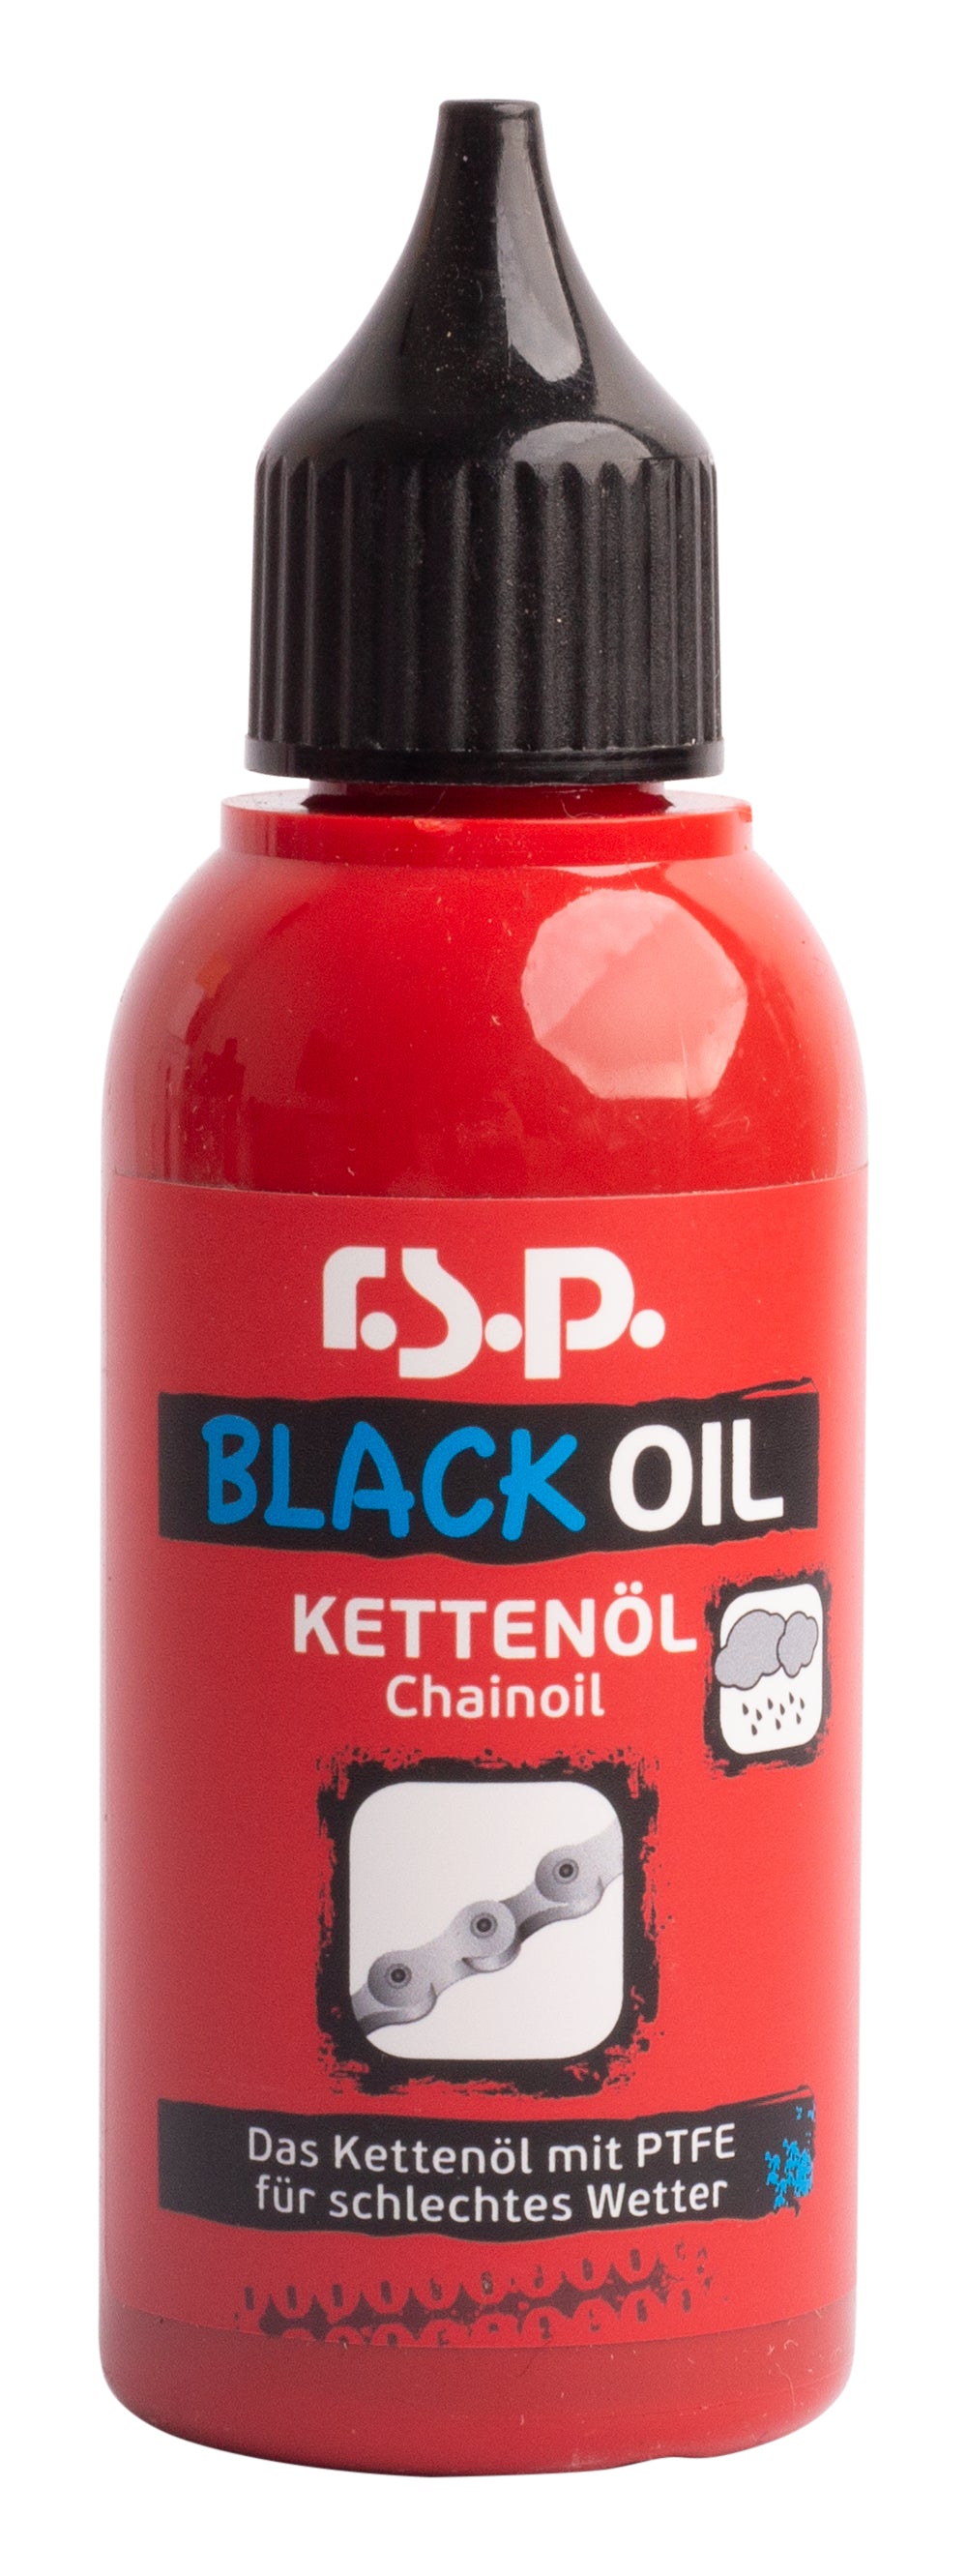 r.s.p. BLACK OIL (Kettenöl für schlechtes Wetter) 50ml – The Styrian Flow